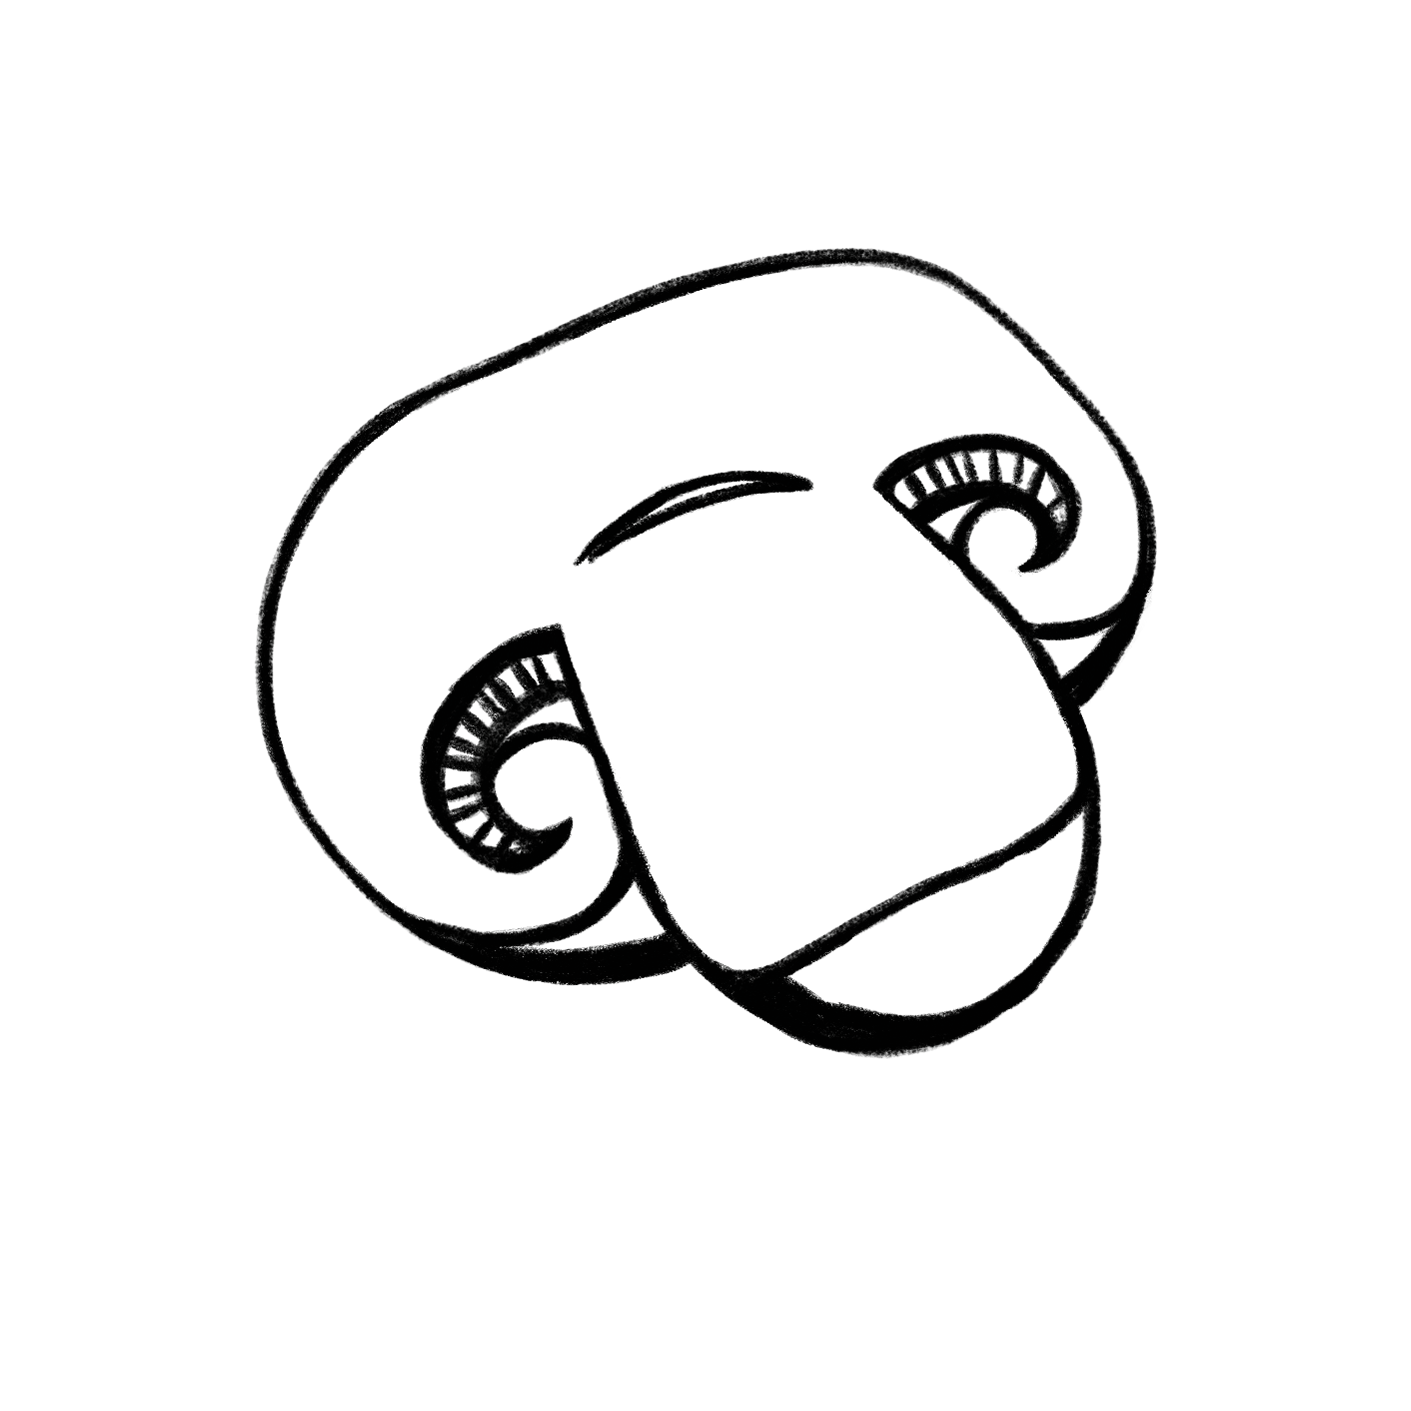 Illustration Outline Champignon von der Pilzzucht Mjko